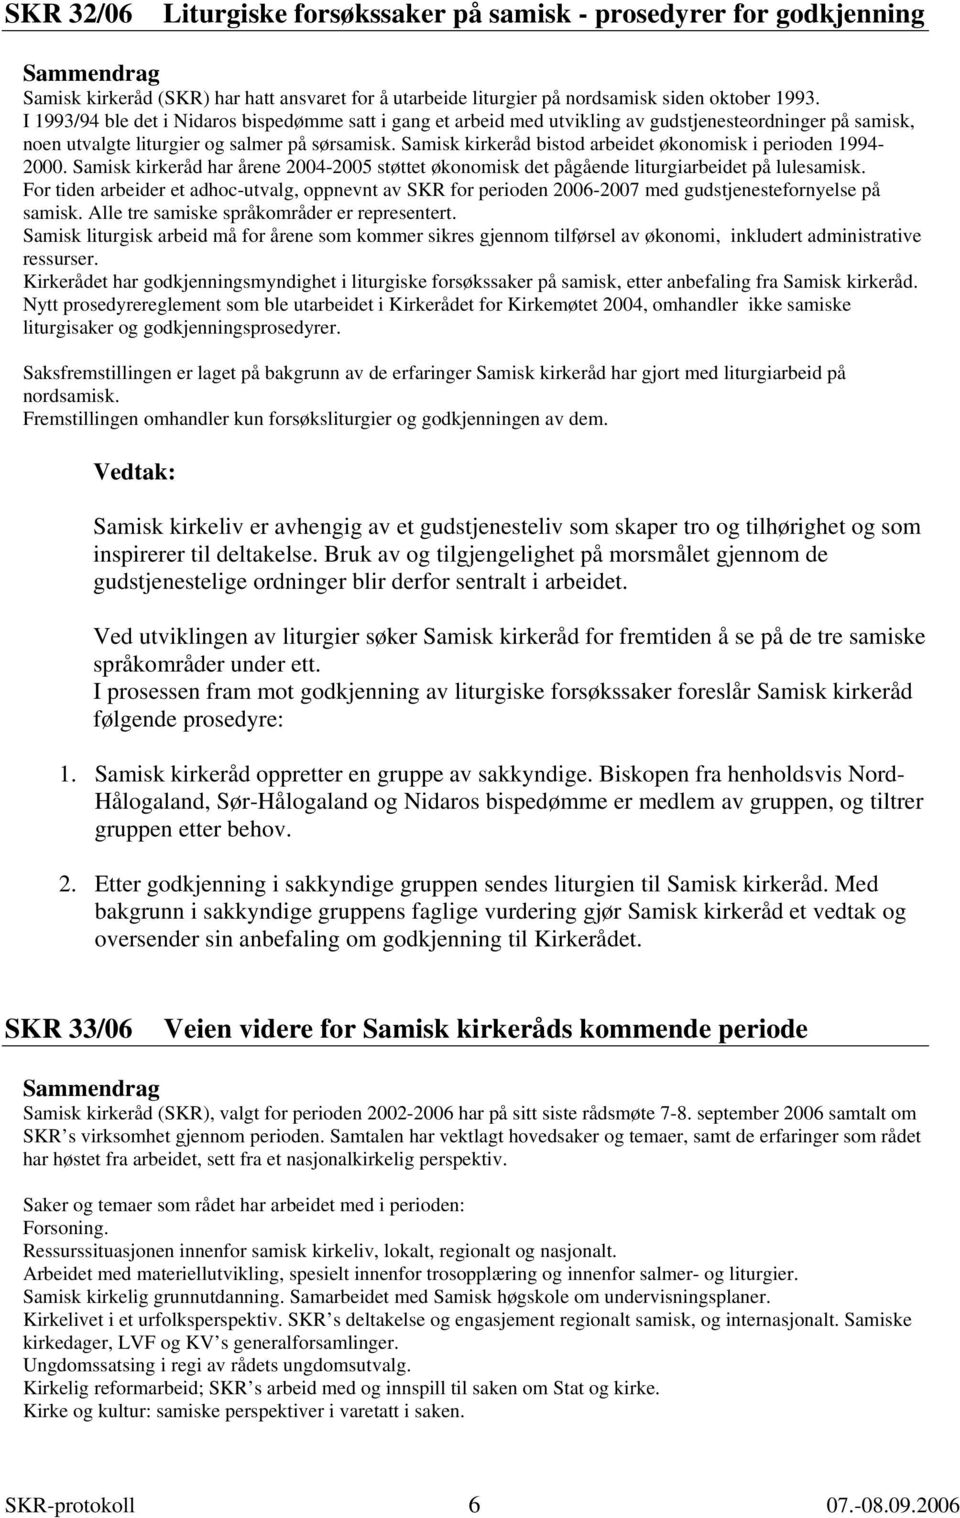 Samisk kirkeråd bistod arbeidet økonomisk i perioden 1994-2000. Samisk kirkeråd har årene 2004-2005 støttet økonomisk det pågående liturgiarbeidet på lulesamisk.